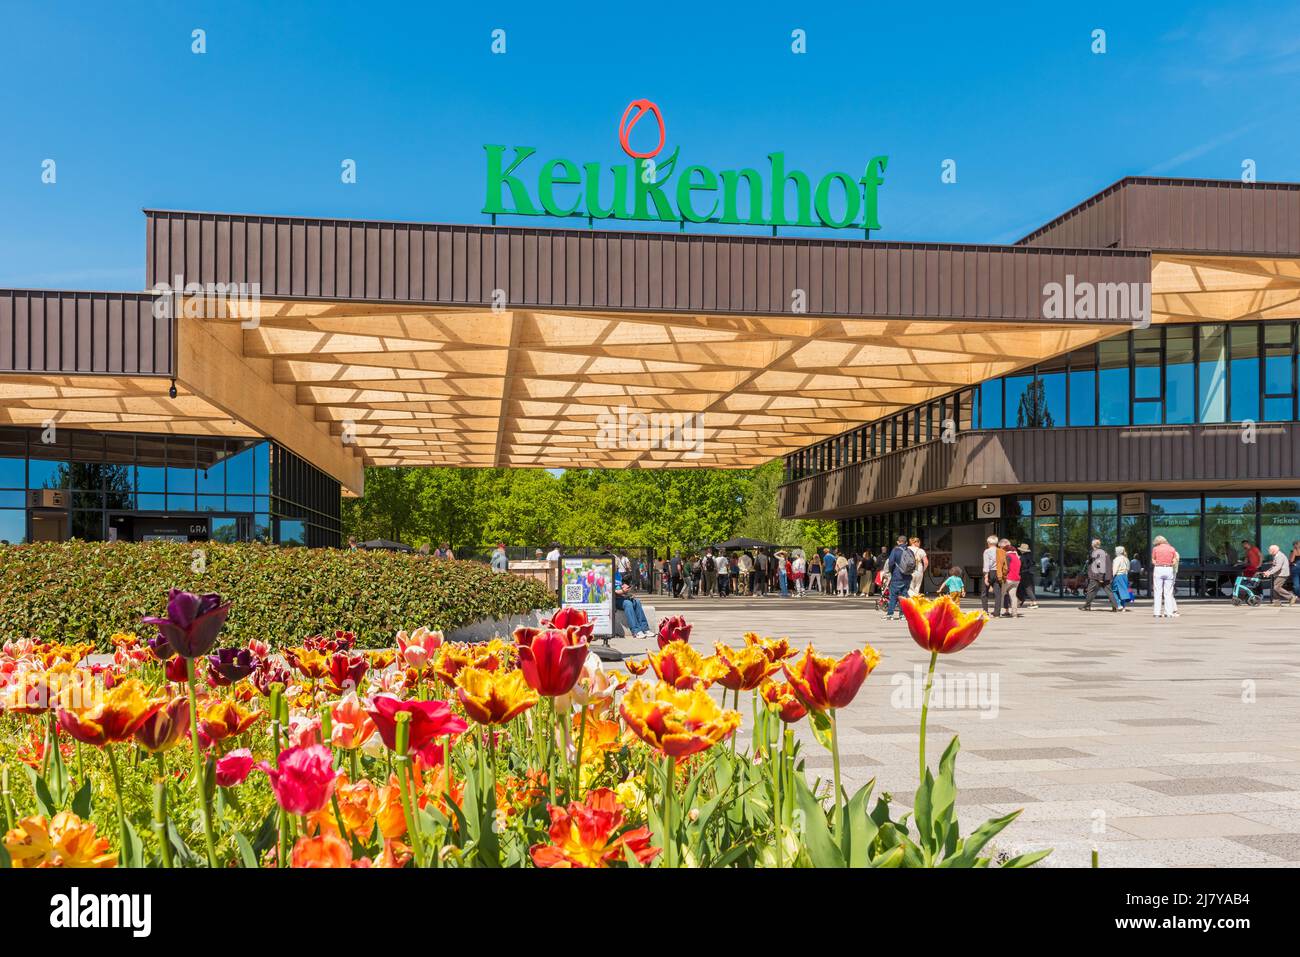 Entrée au complexe des jardins de Keukenhof à Lisse, en Hollande-Méridionale, aux pays-Bas. Keukenhof est l'un des plus grands jardins fleuris du monde. Banque D'Images